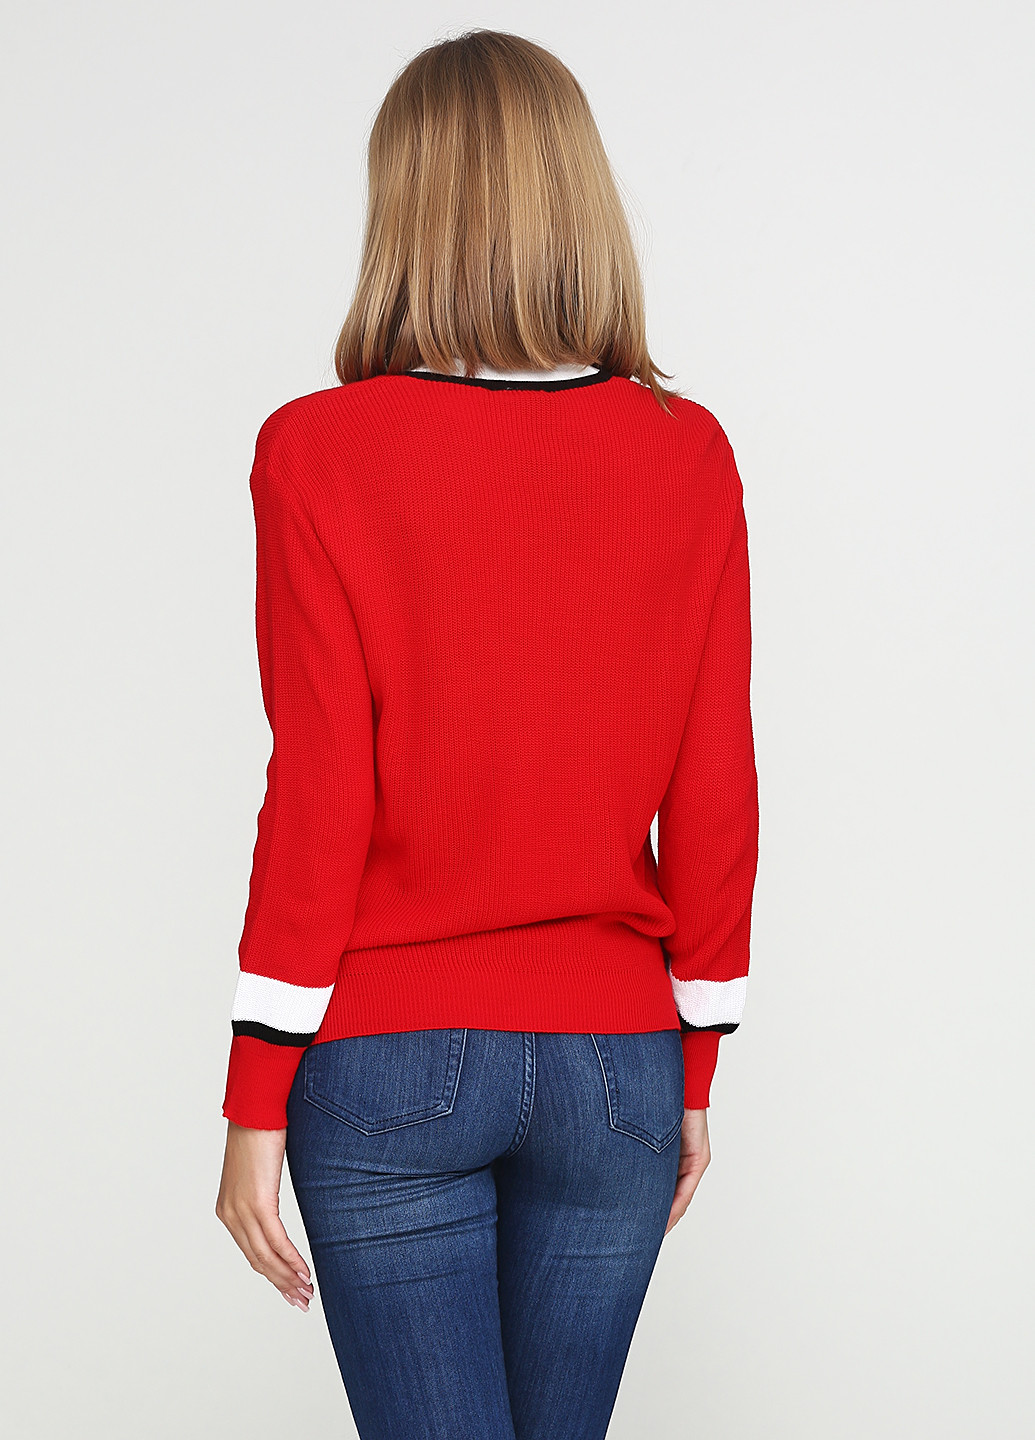 Красный демисезонный пуловер пуловер Imperial